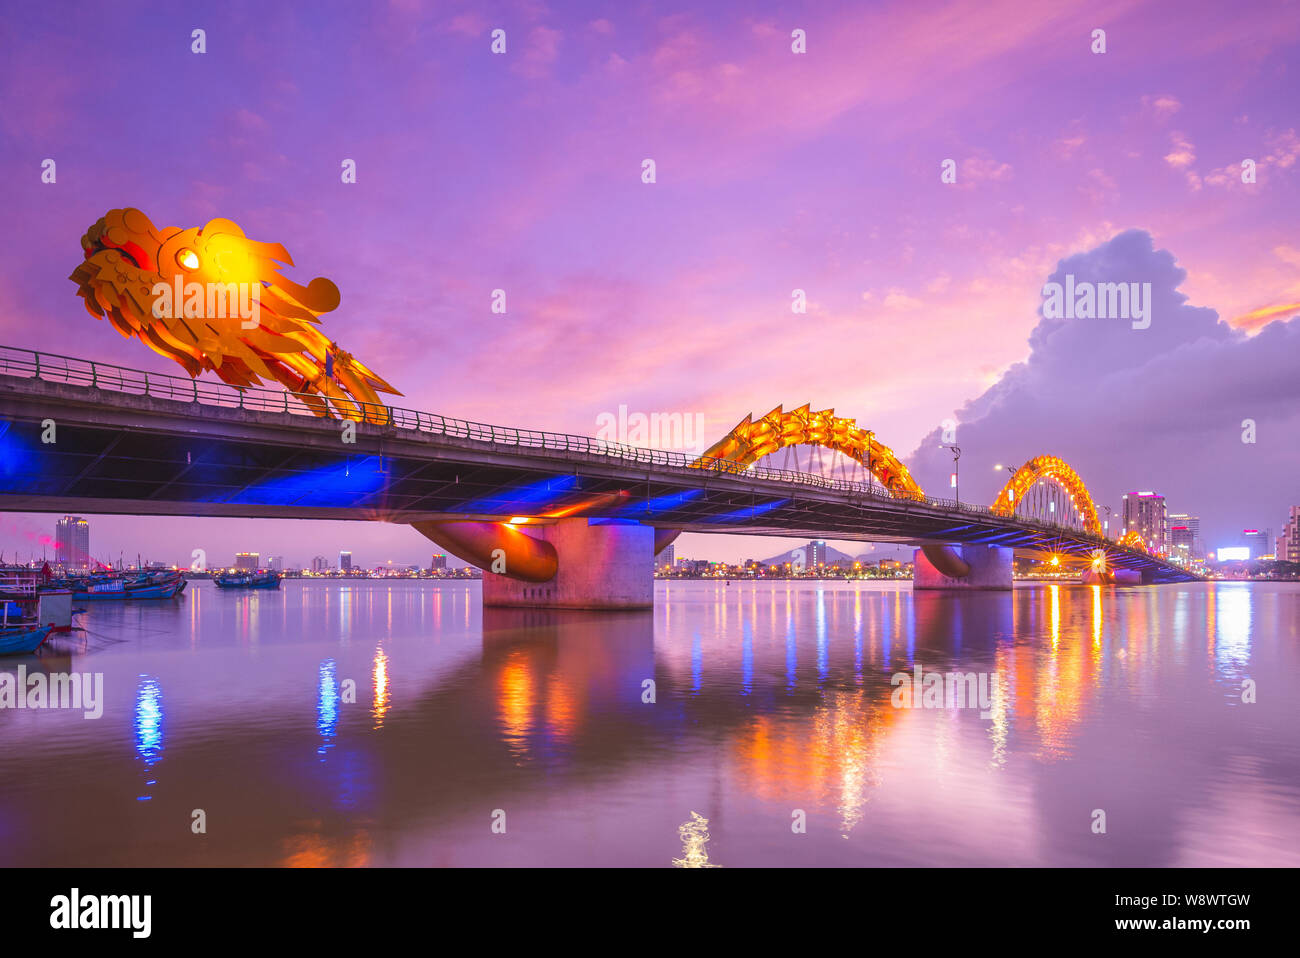 Dragon bridge Vietnam - Cầu Rồng Đà Nẵng, với hình dáng rồng chiến đấu hùng mạnh, là một trong những địa điểm tham quan nổi tiếng của Việt Nam. Hãy cùng chiêm ngưỡng vẻ đẹp độc đáo của cây cầu và hình rồng được tạo hình trong thiết kế. Bạn sẽ bị lôi cuốn ngay từ cái nhìn đầu tiên.